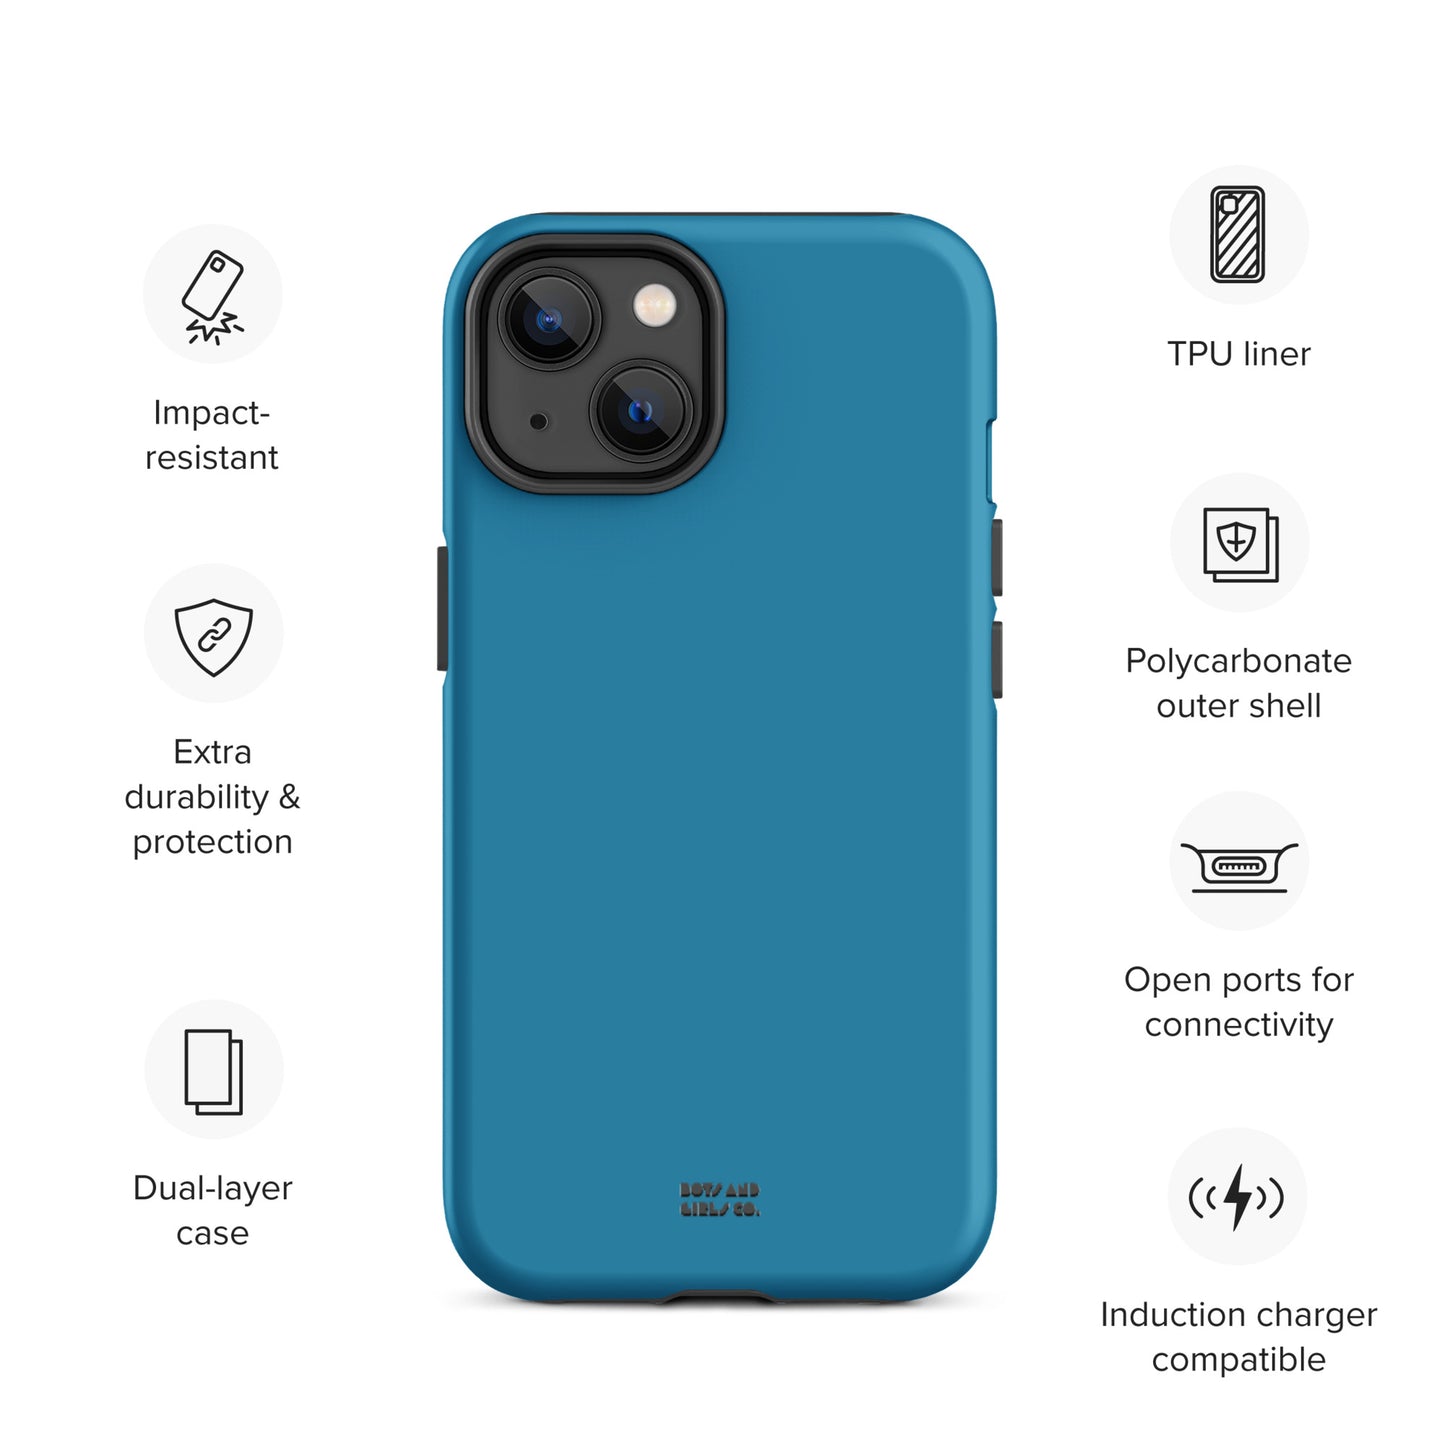 SAPPHIRE BLUE - Tough iPhone case